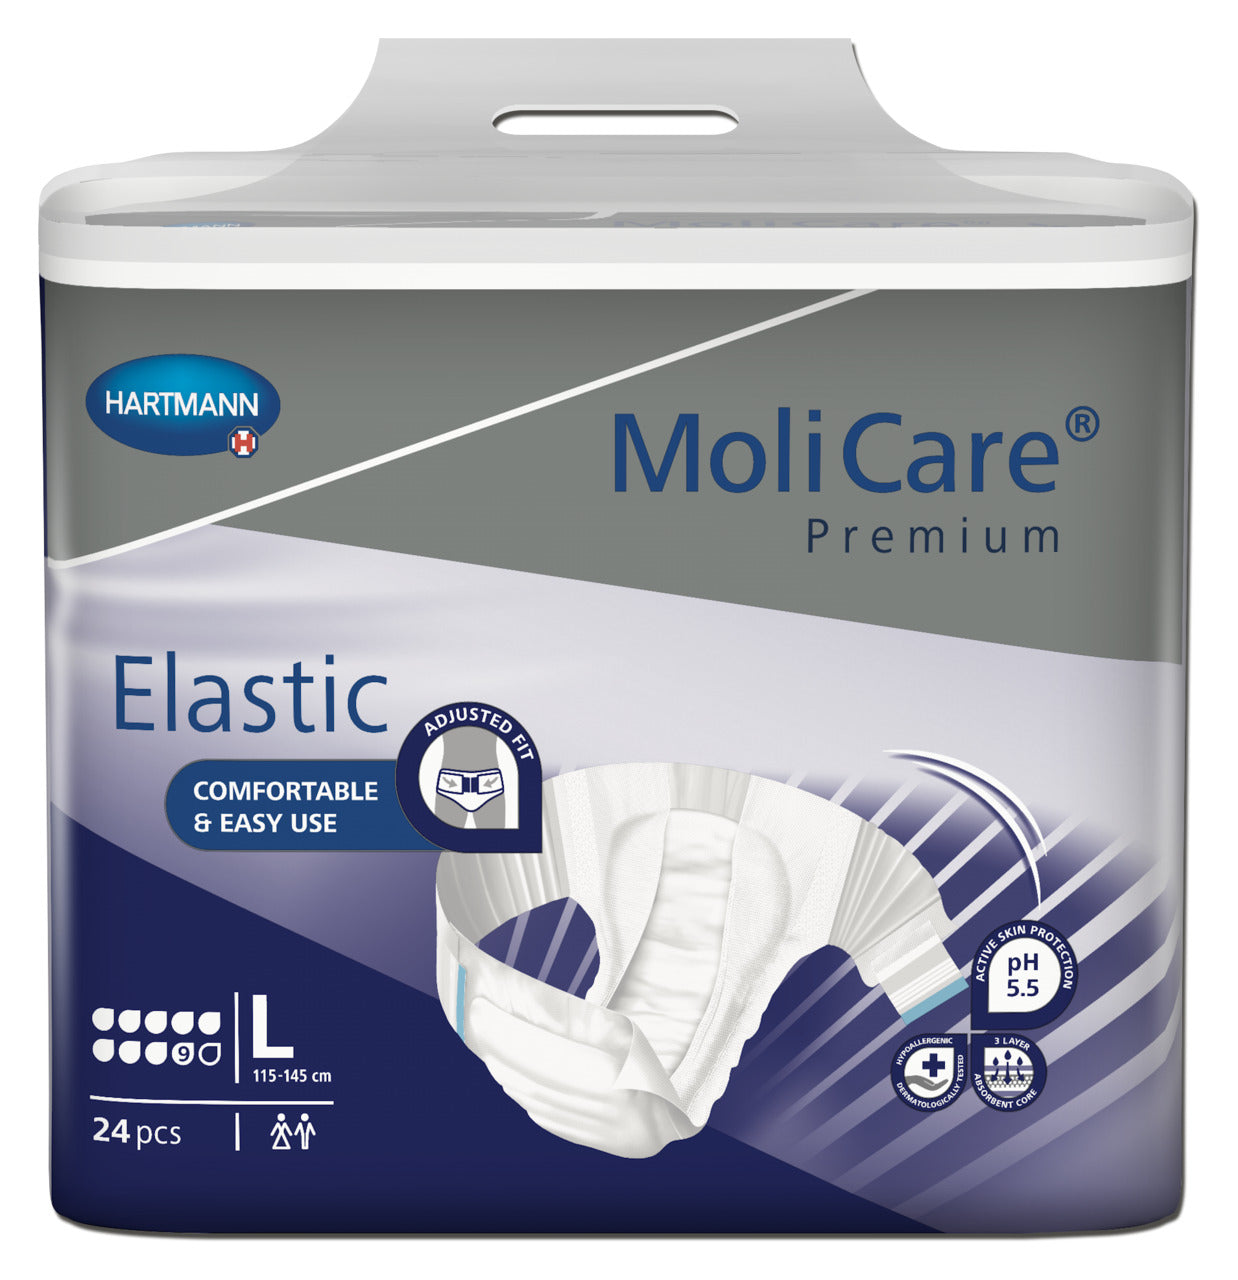 MoliCare Premium Elastic 9 Drop